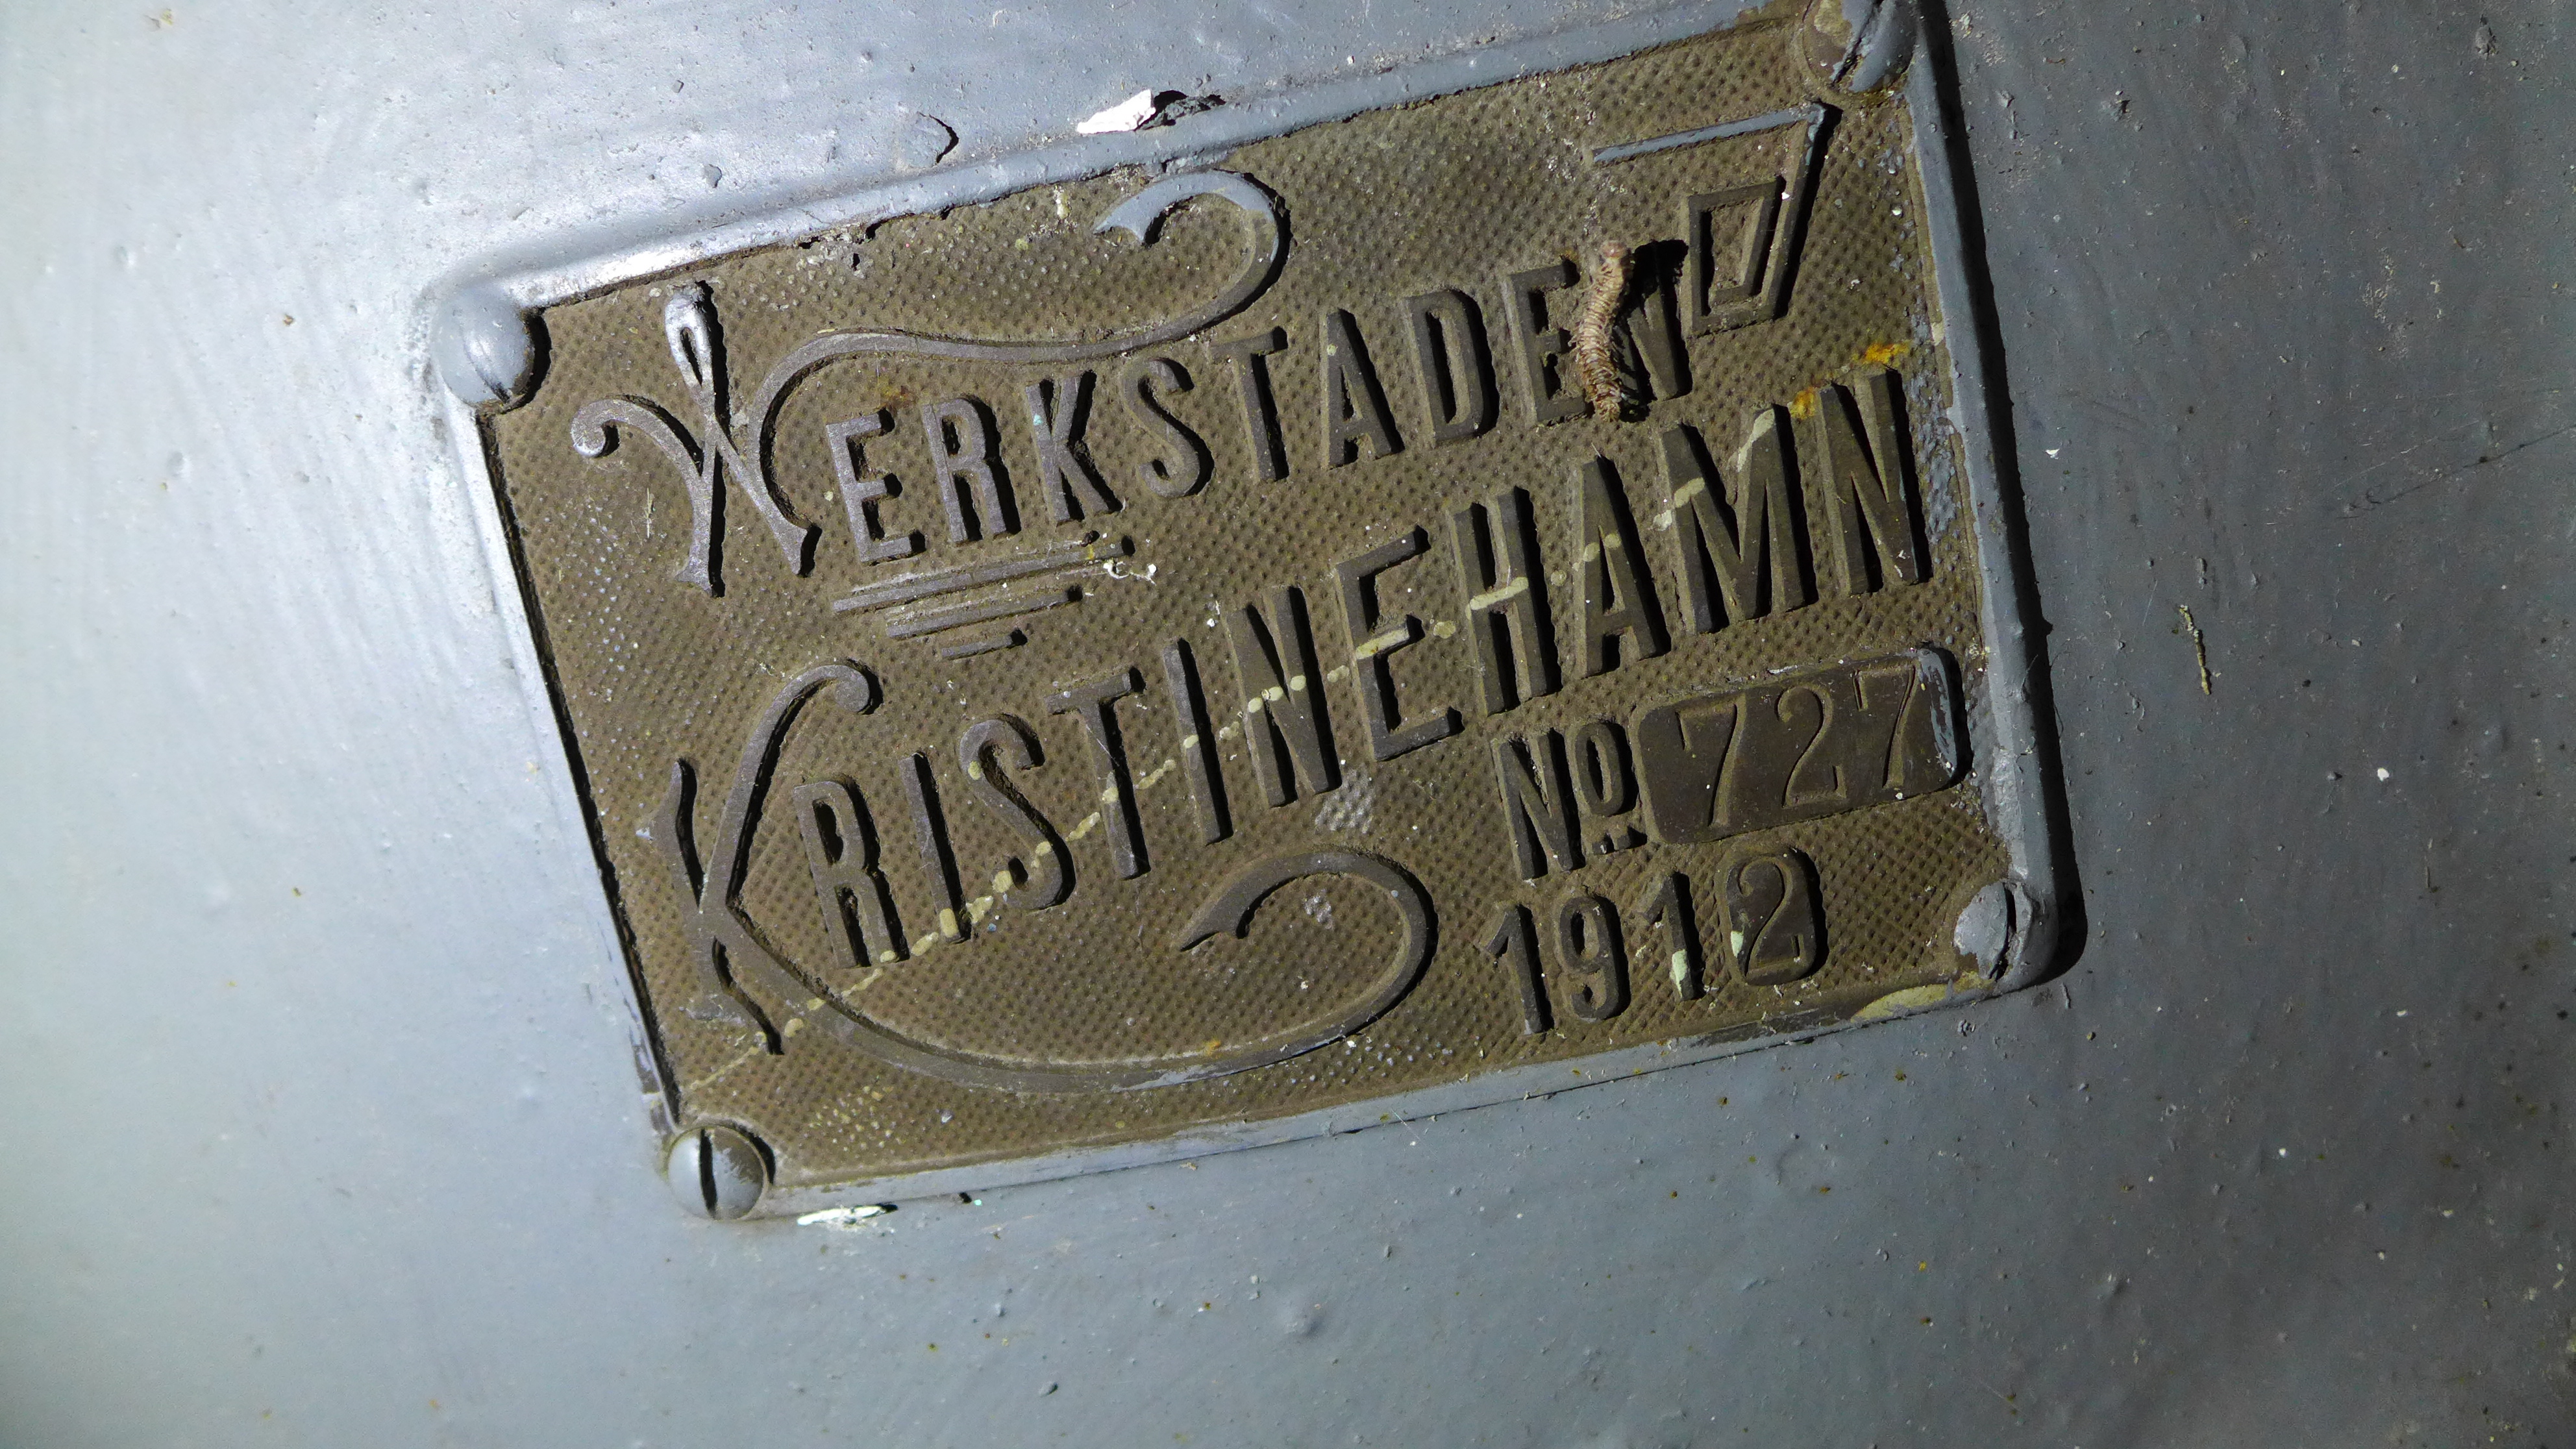 Den ursprungliga turbinen var en francisturbin tillverkad 1912 av KMV (Aktiebolaget Karlstads mekaniska verkstad – verkstaden Kristinehamn). Dess tillverkningsnummer var 727. Turbinskylten finns kvar, men turbinen är ersatt av en Hällaryd från 1940-talet. 